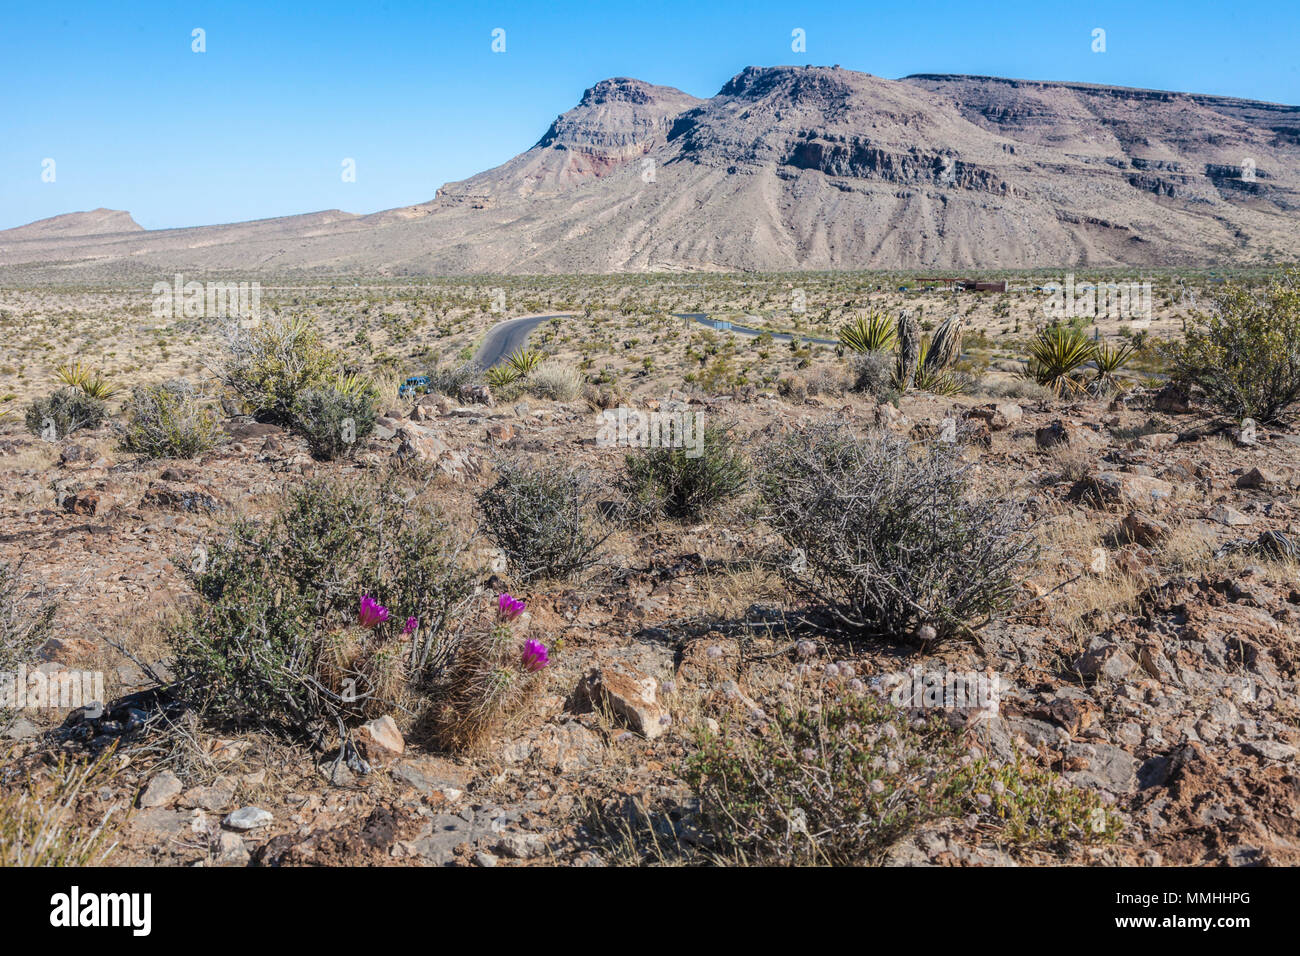 Des cactus en fleurs et une route sinueuse dans la zone de conservation nationale de Red Rock Canyon à l'extérieur de Las Vegas, Nevada Banque D'Images